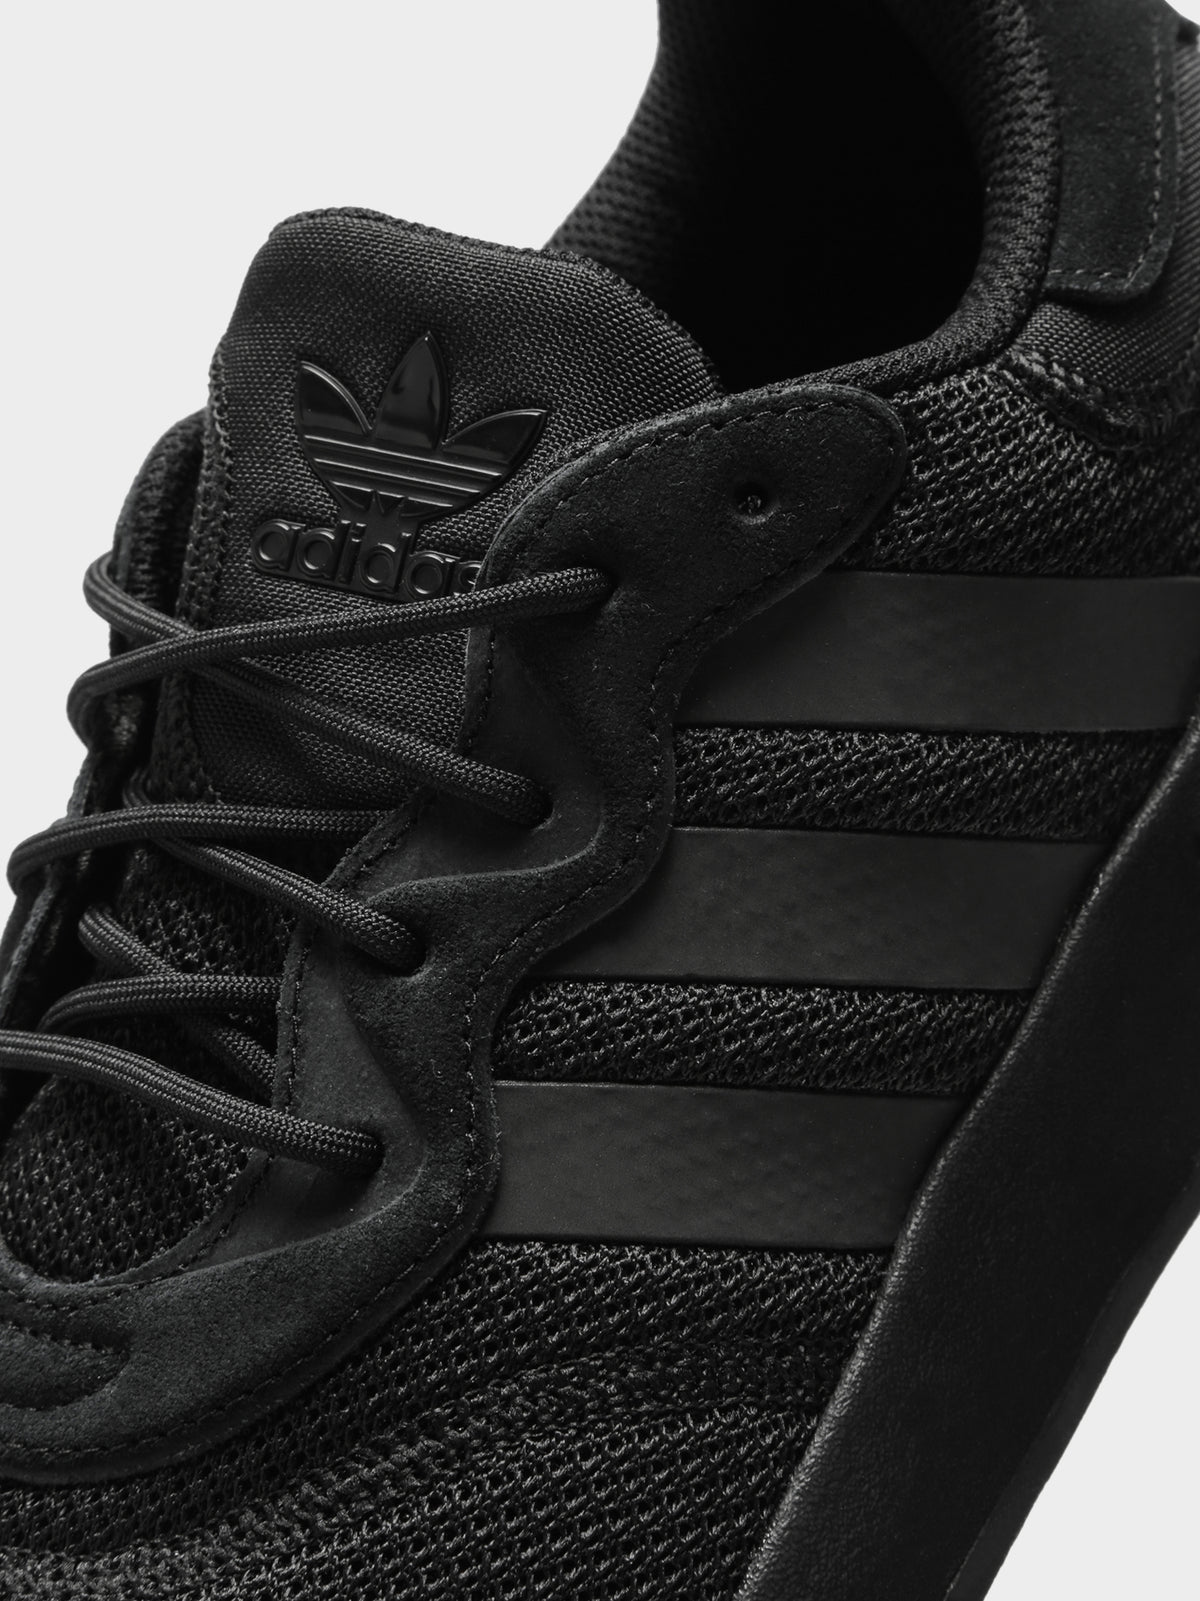 Unisex X_Plr S Sneakers in Core Black